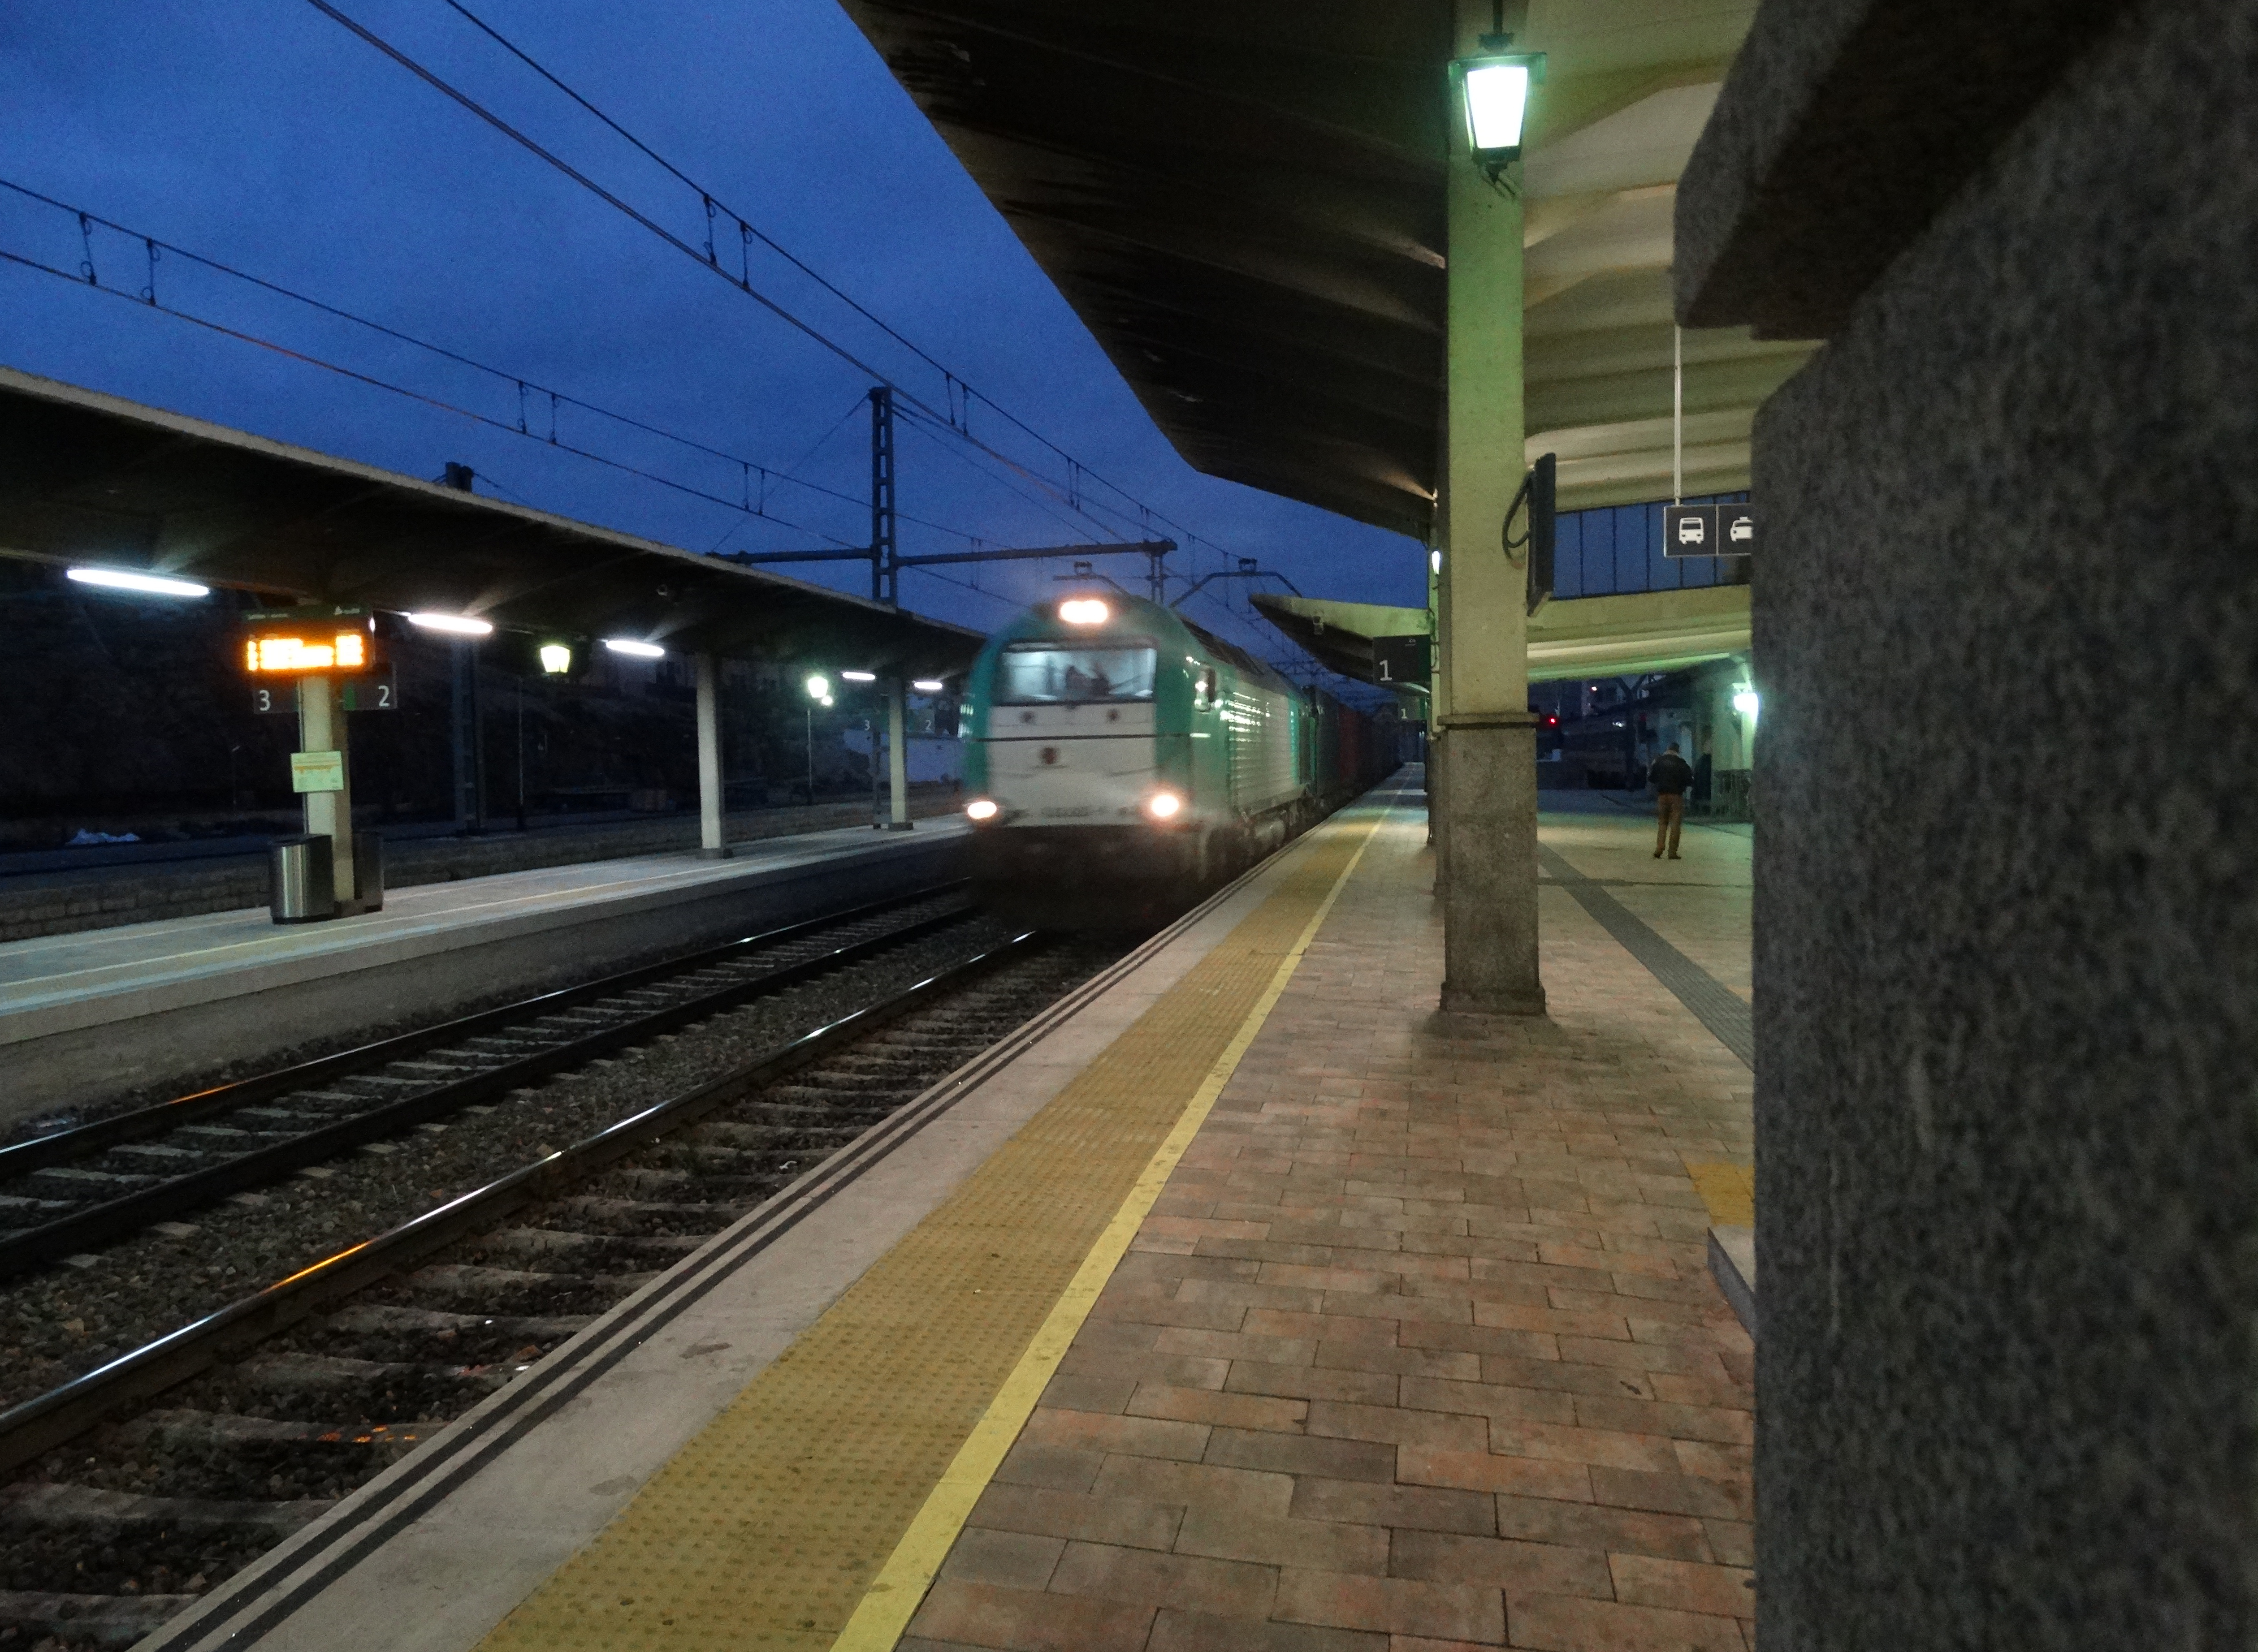 Tren atravesando la estación